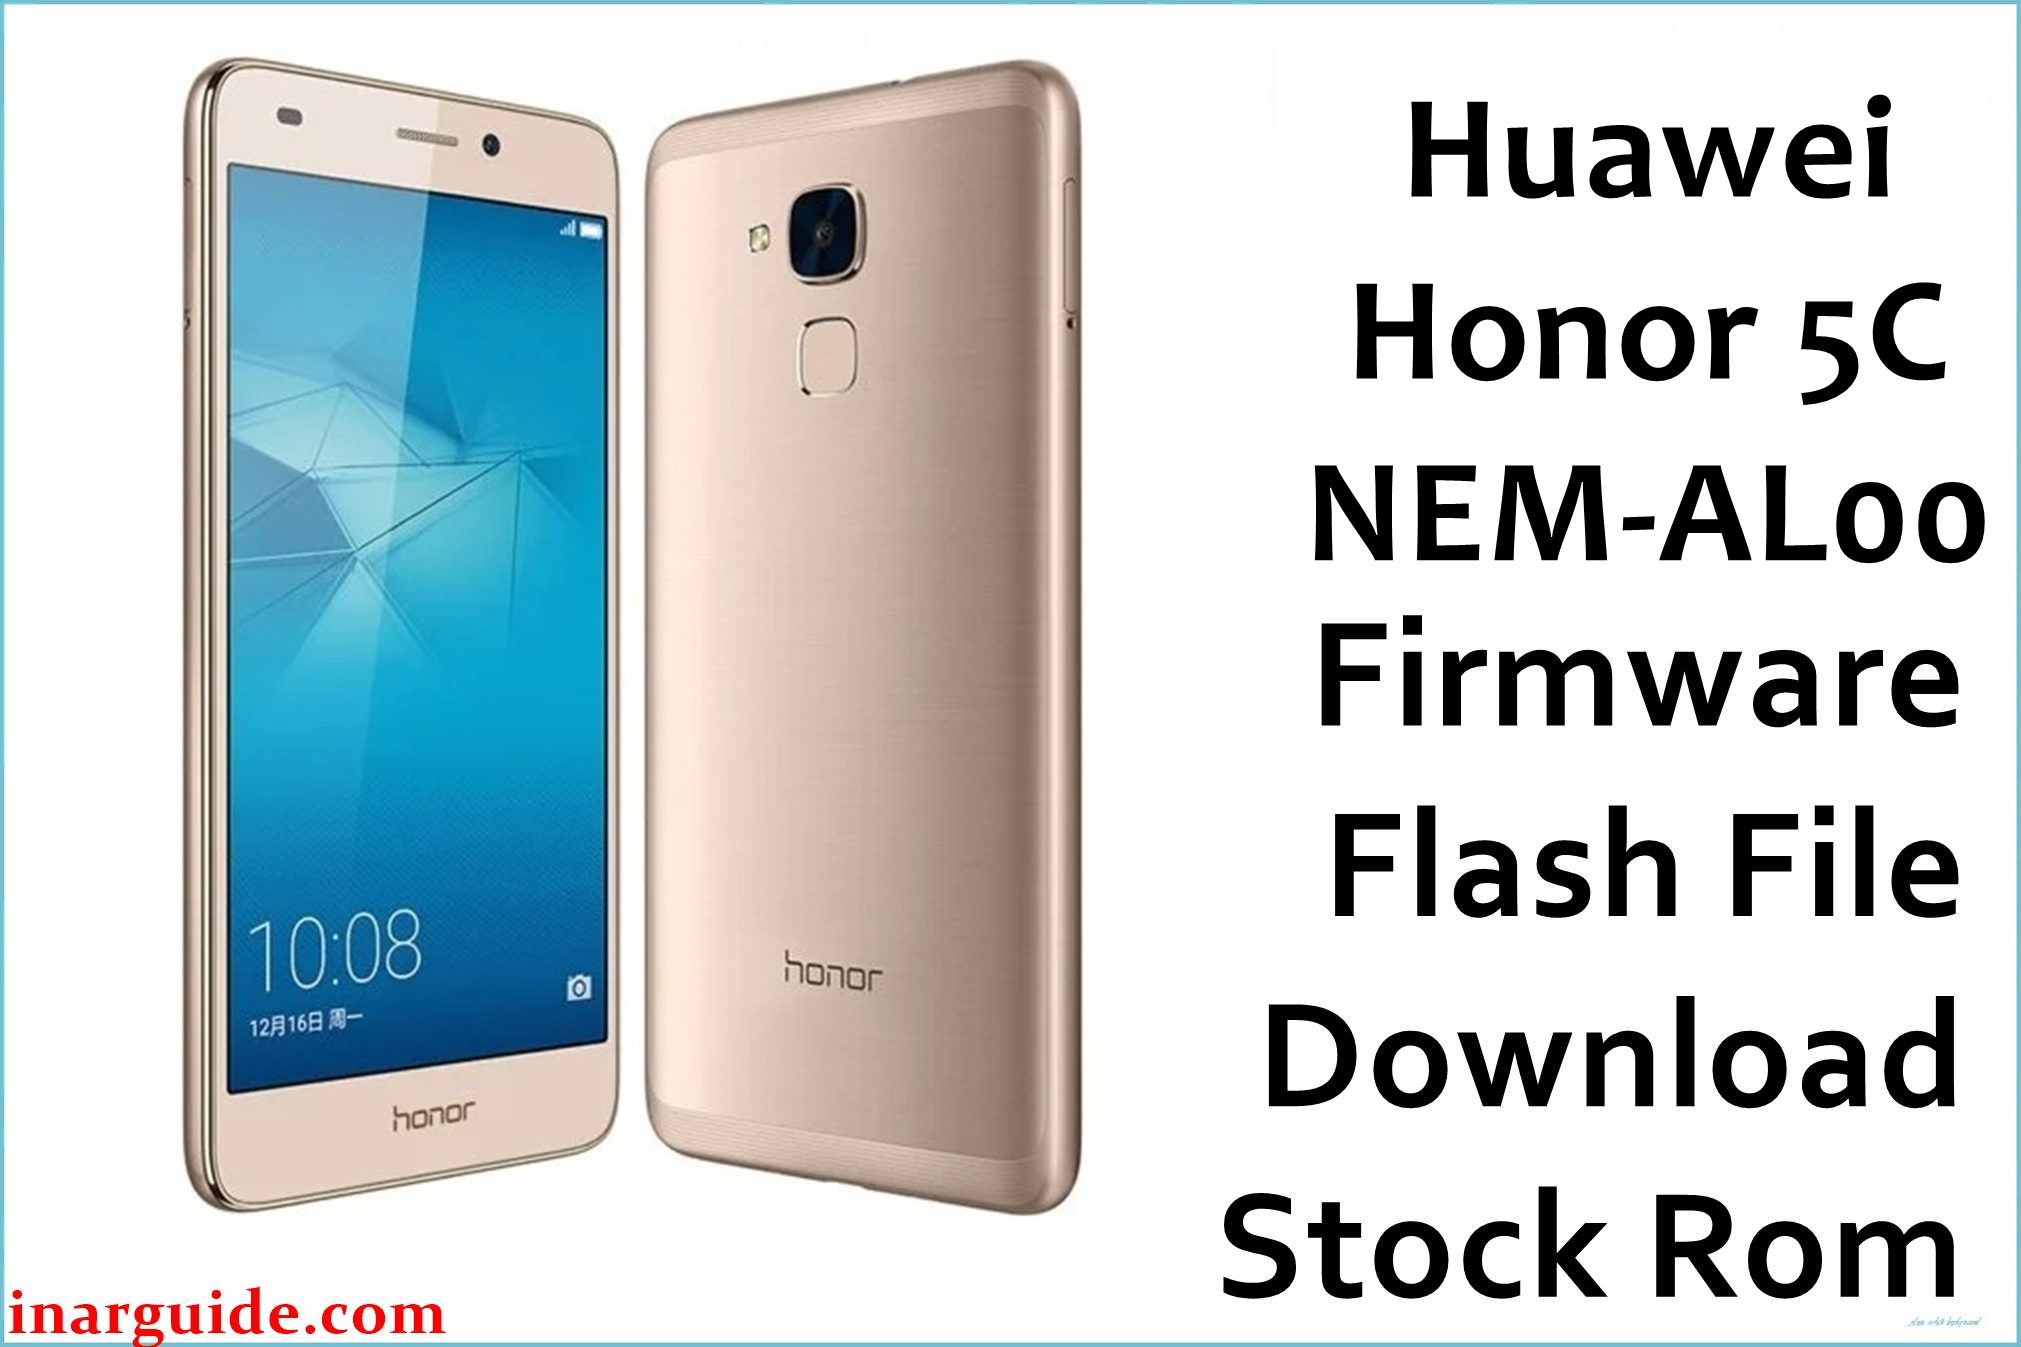 Huawei Honor 5C NEM AL00